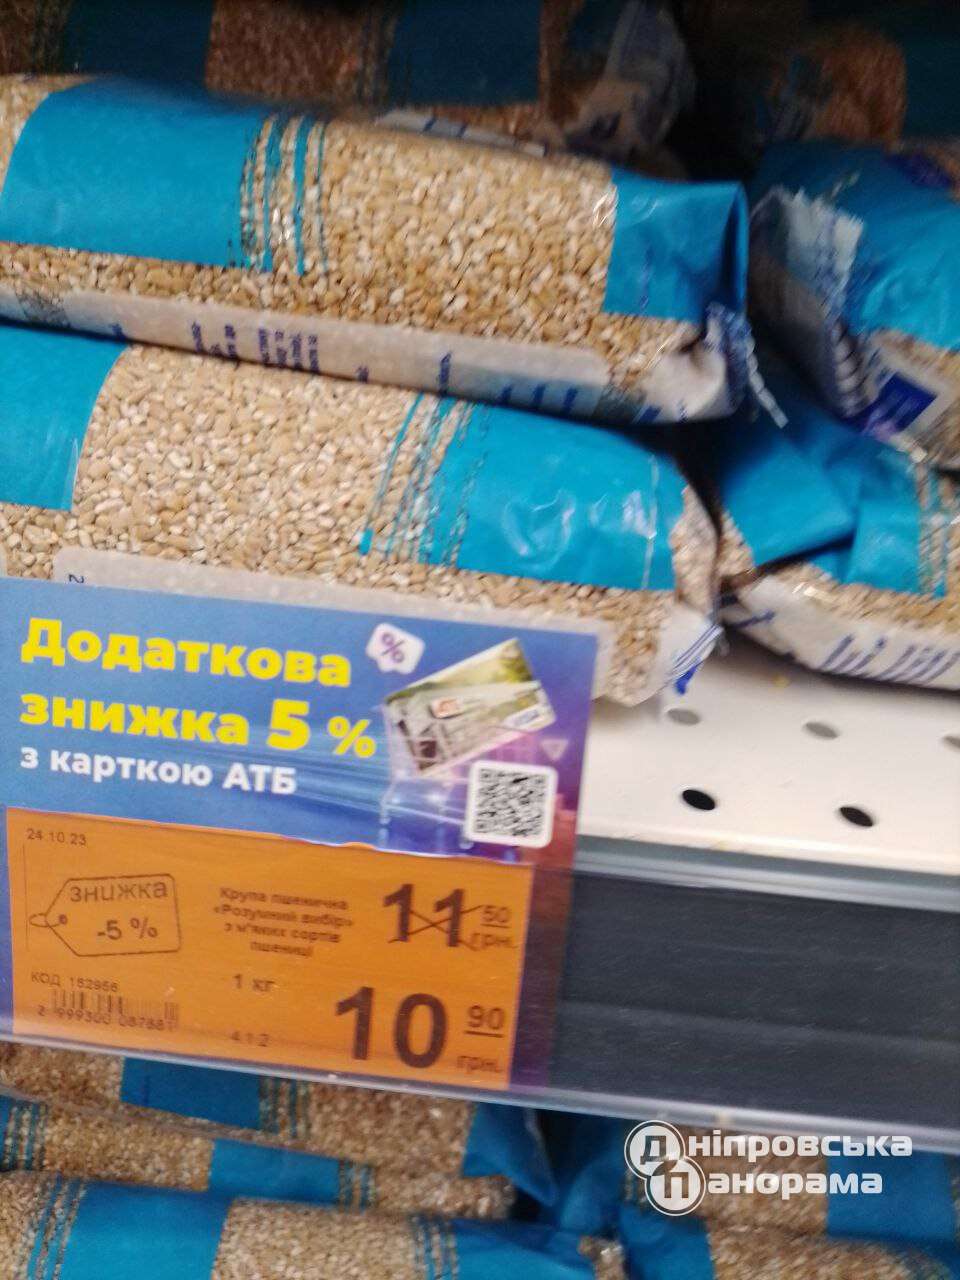 ціни на пшенічку Дніпро